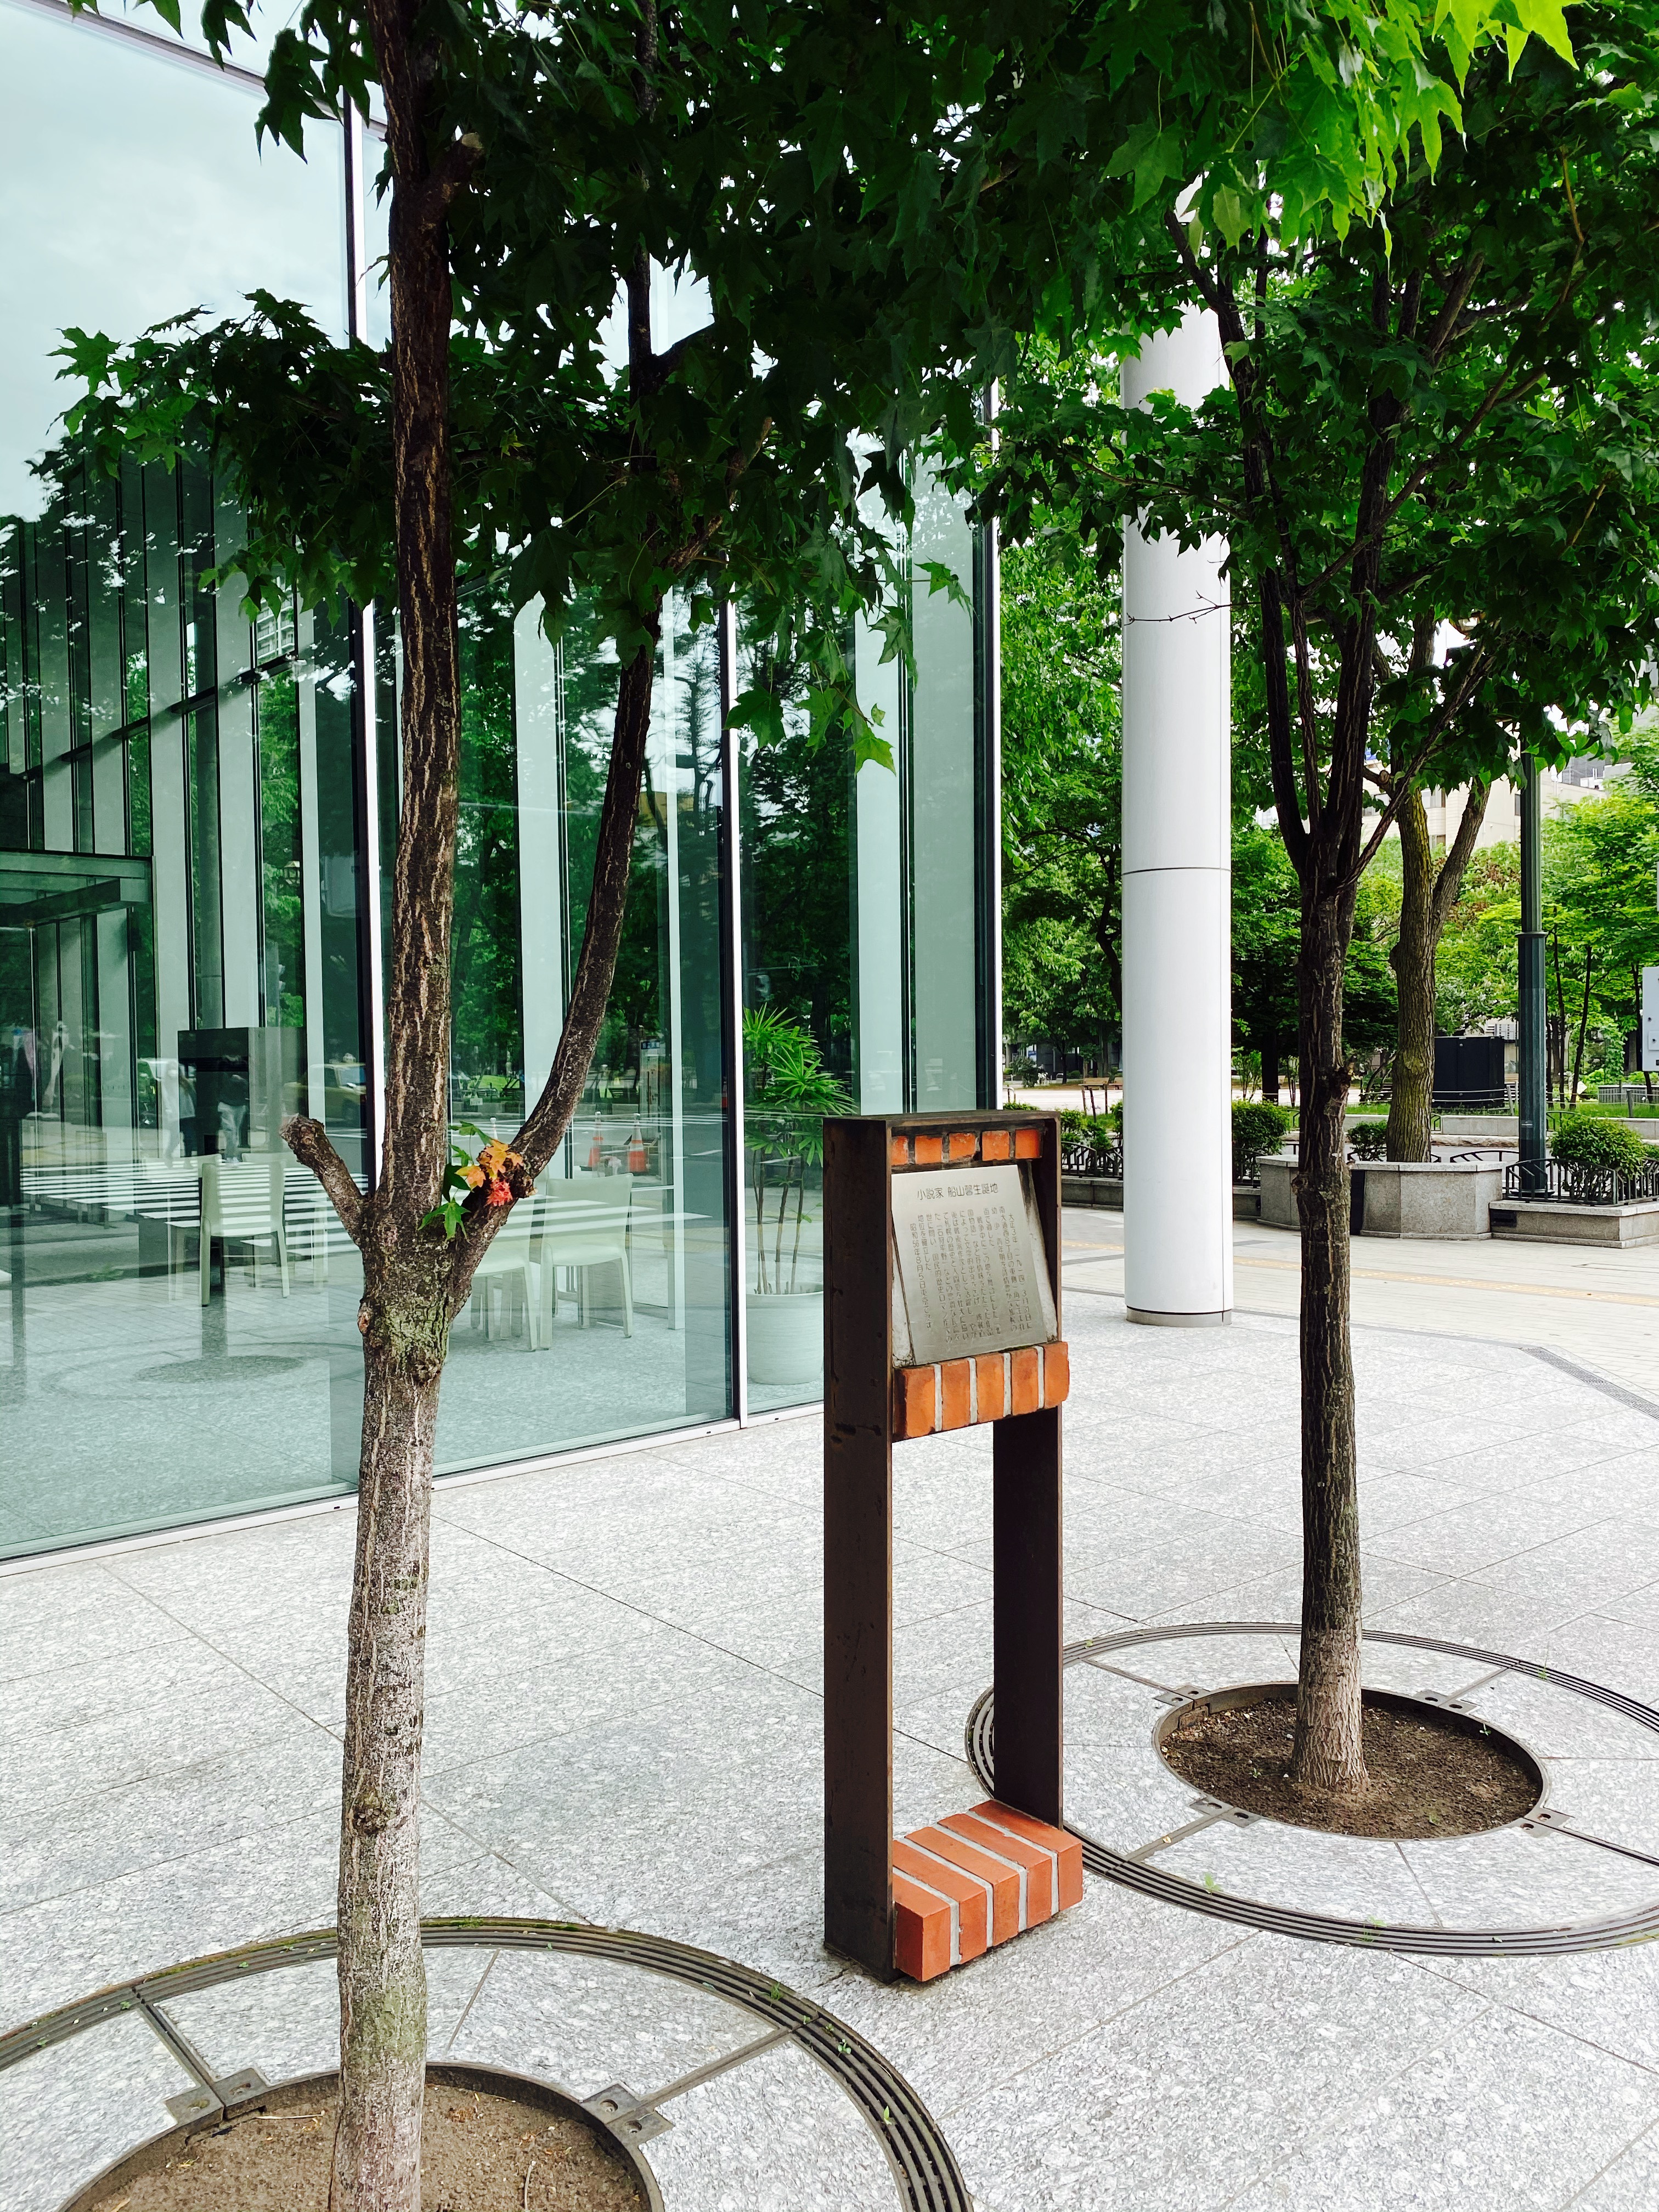 2本の街路樹に挟まれて立つ船山馨生誕地の文学碑